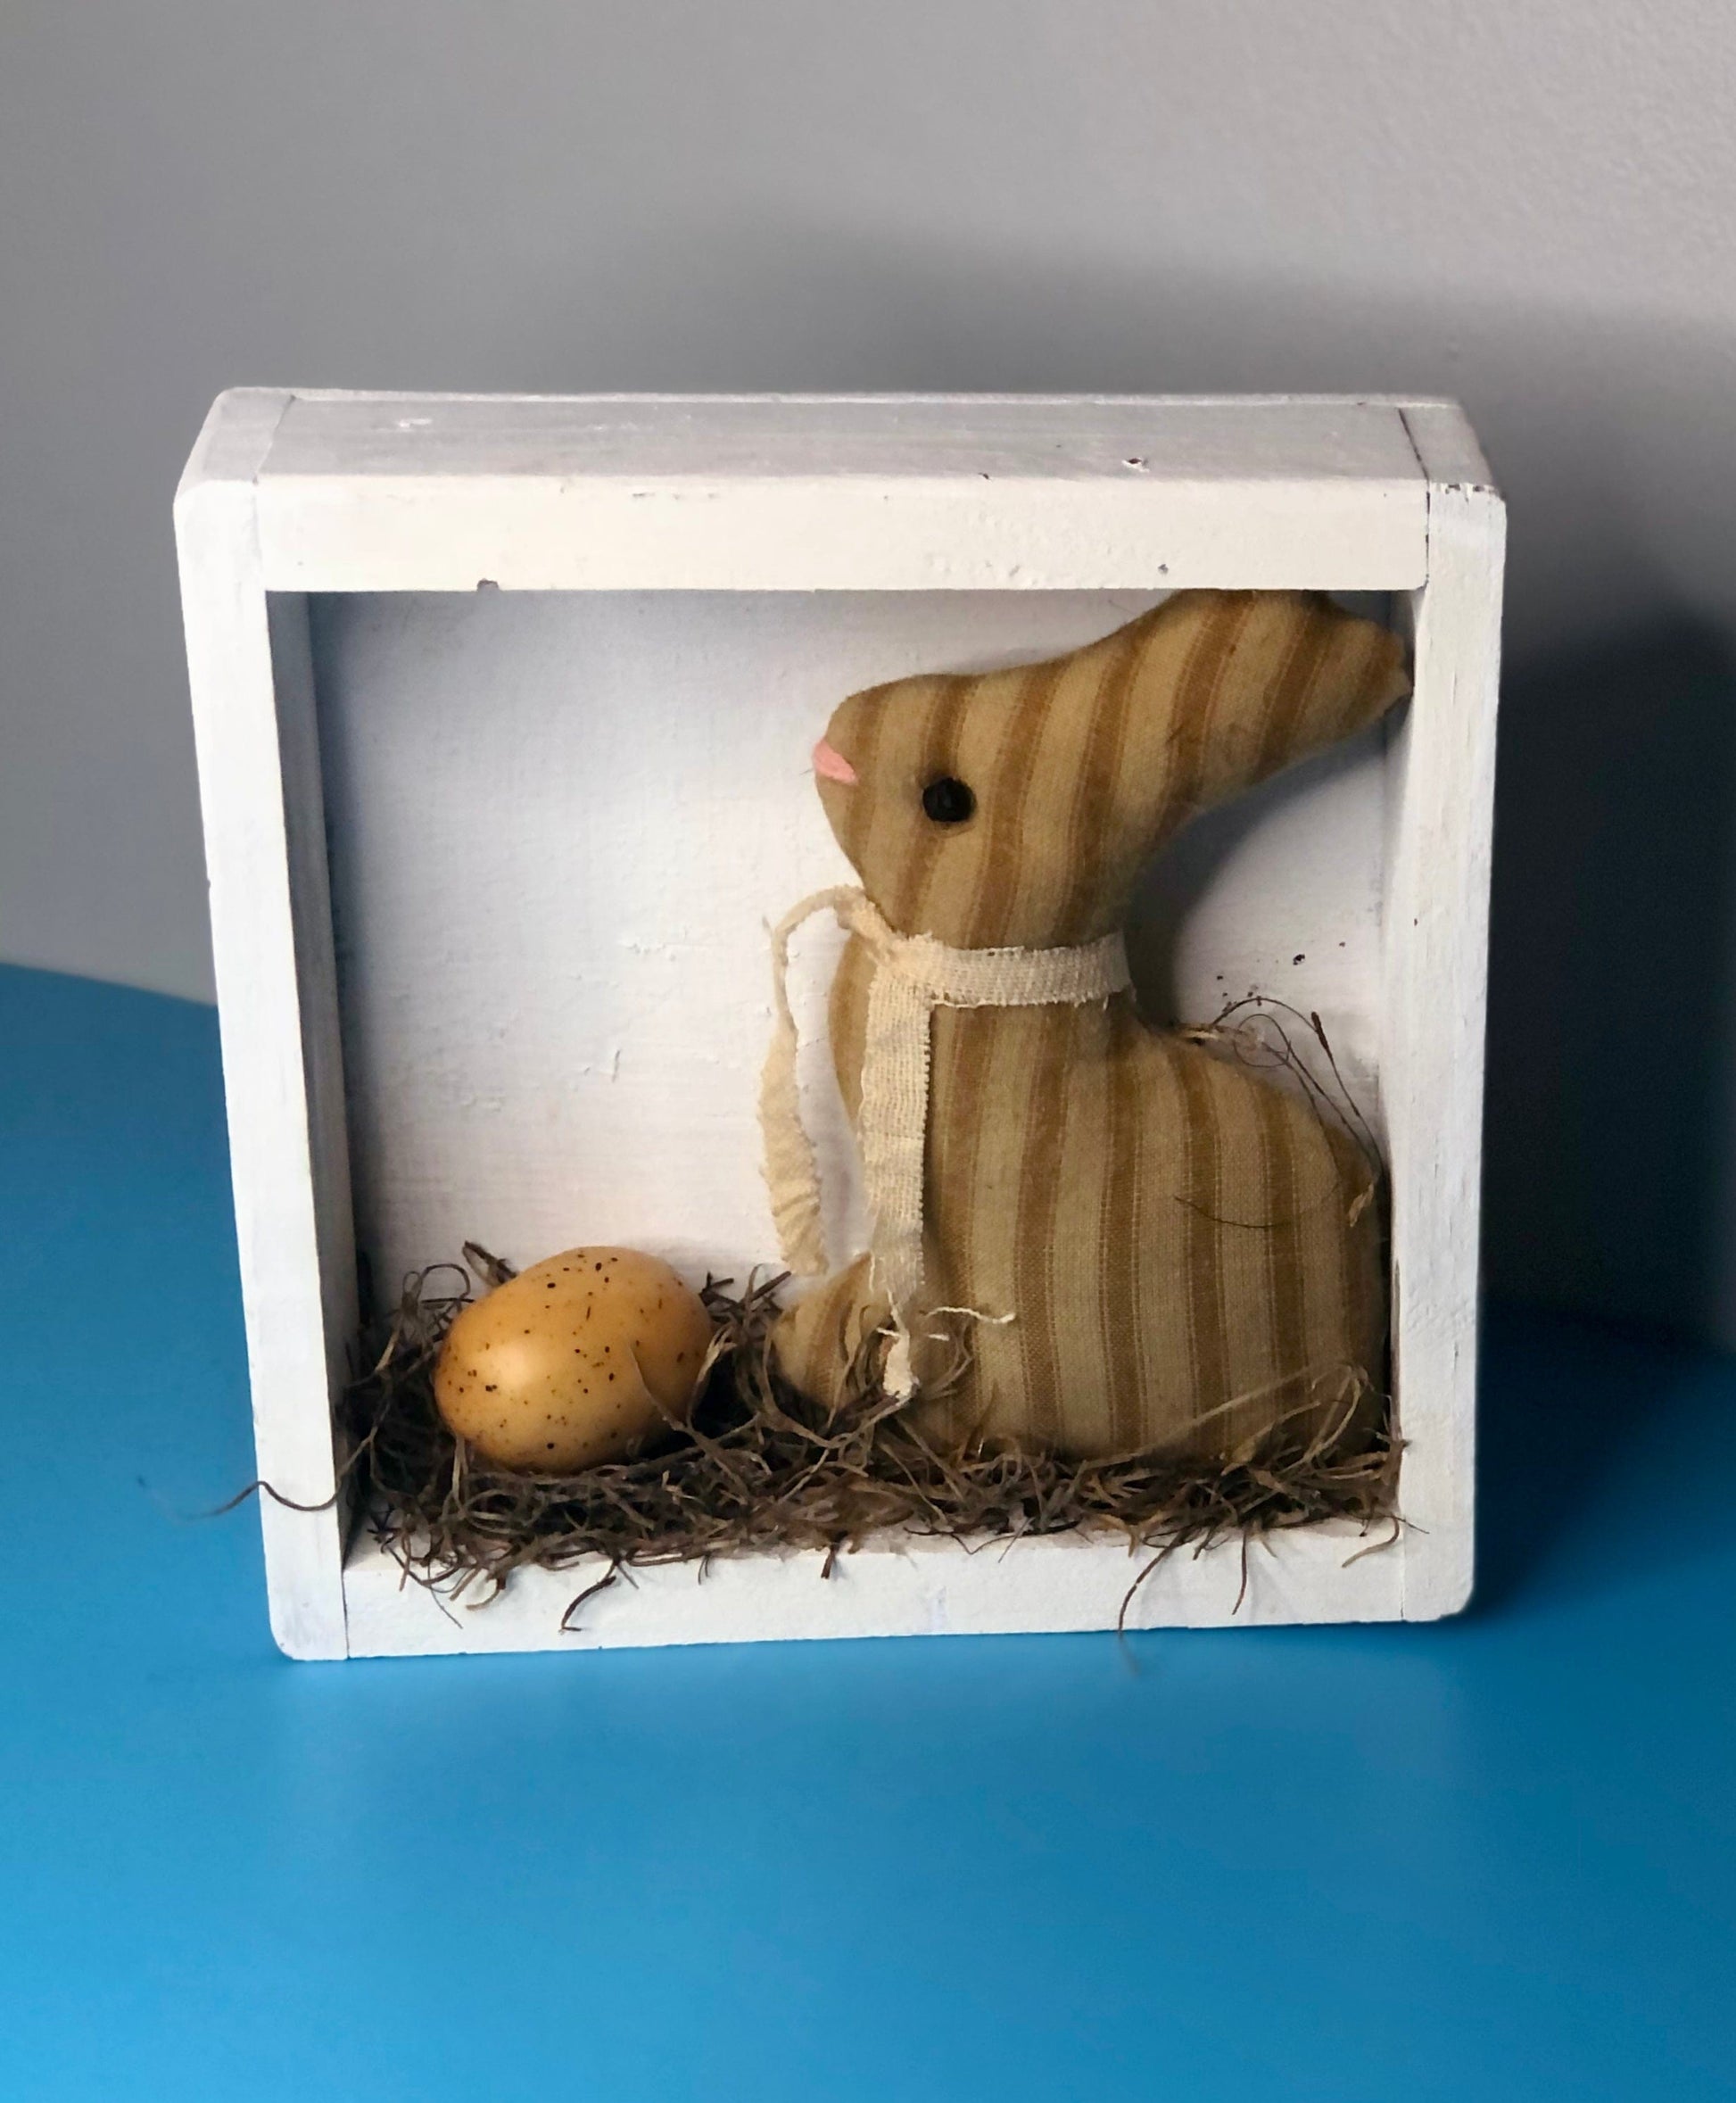 Bunny Box-Adorable Spring Decor Sassafras Originals